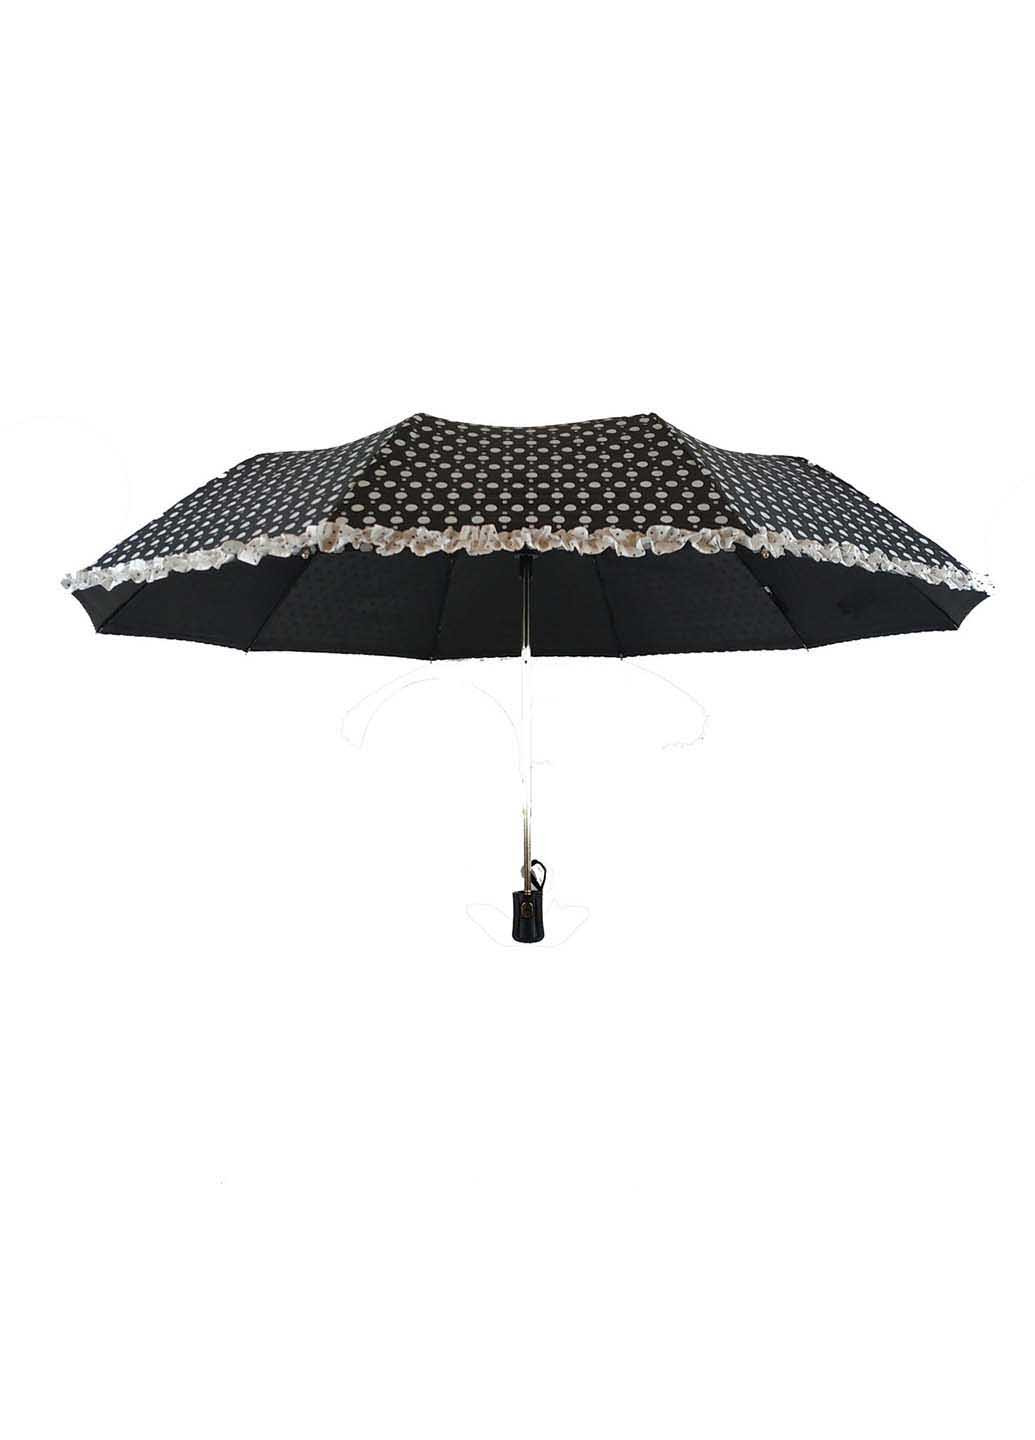 Зонт SL 33057-2 складной чёрно-белого